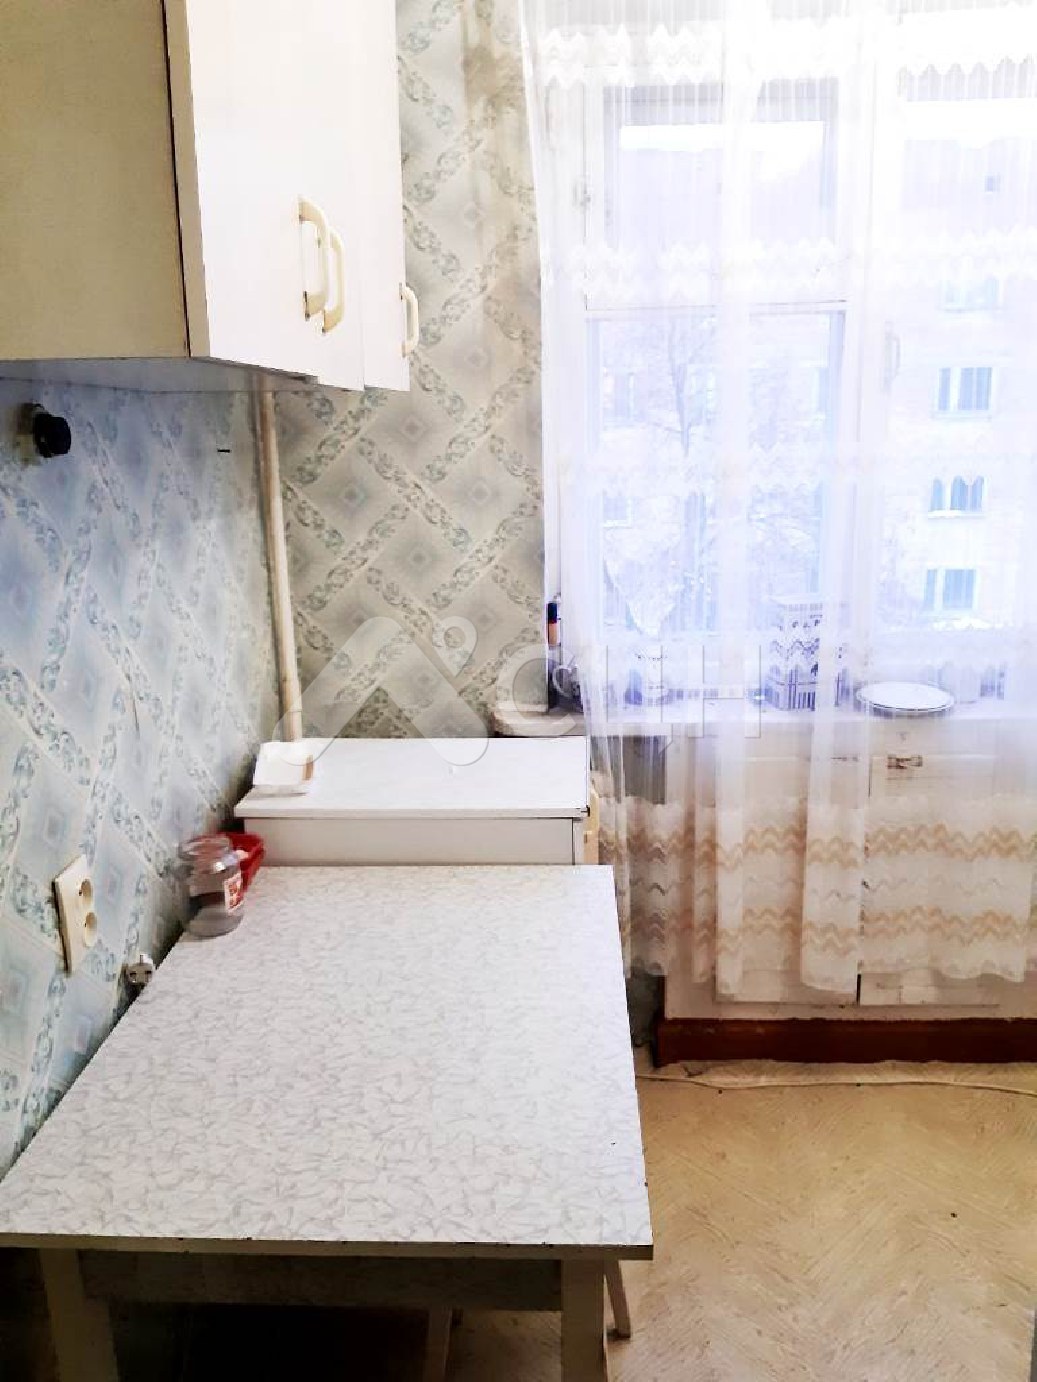 снять квартиру в сарове
: Г. Саров, улица Куйбышева, 36, 2-комн квартира, этаж 4 из 4, продажа.